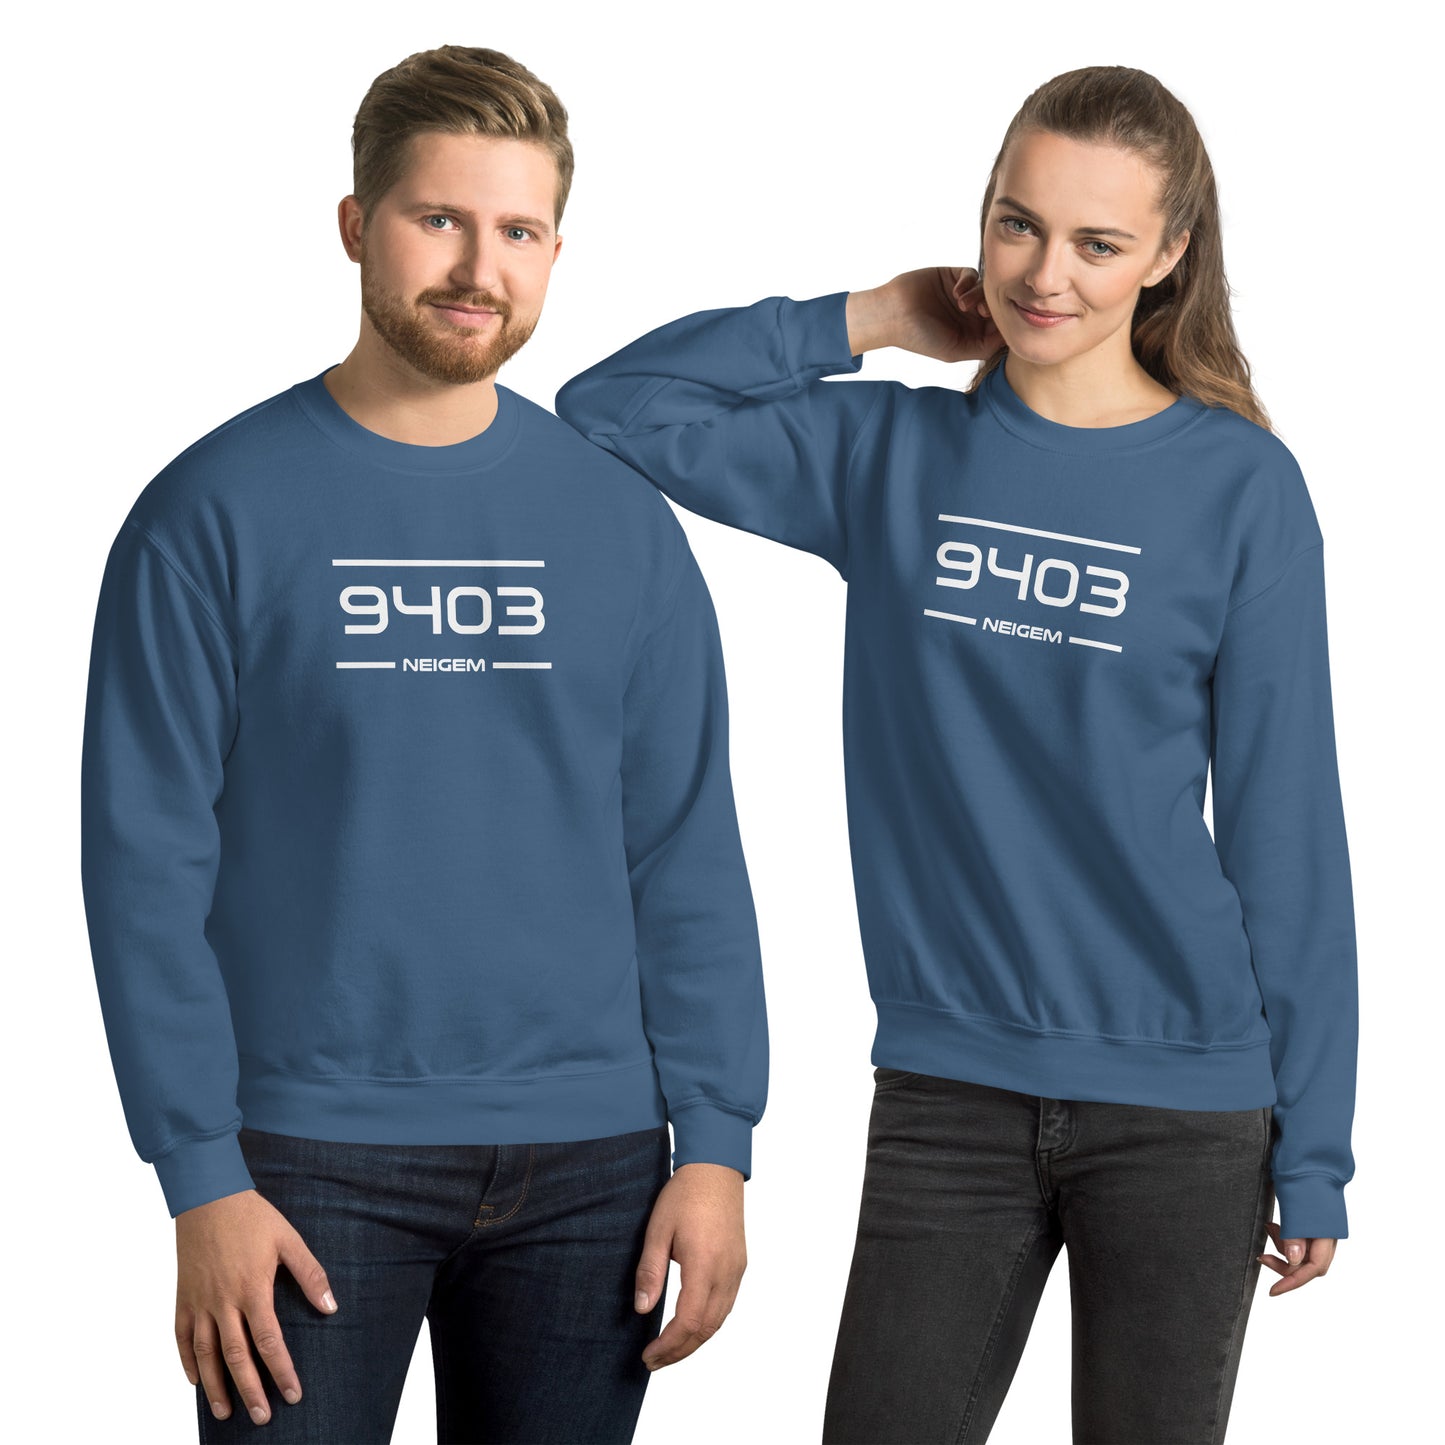 Sweater - 9403 - Neigem (M/V)